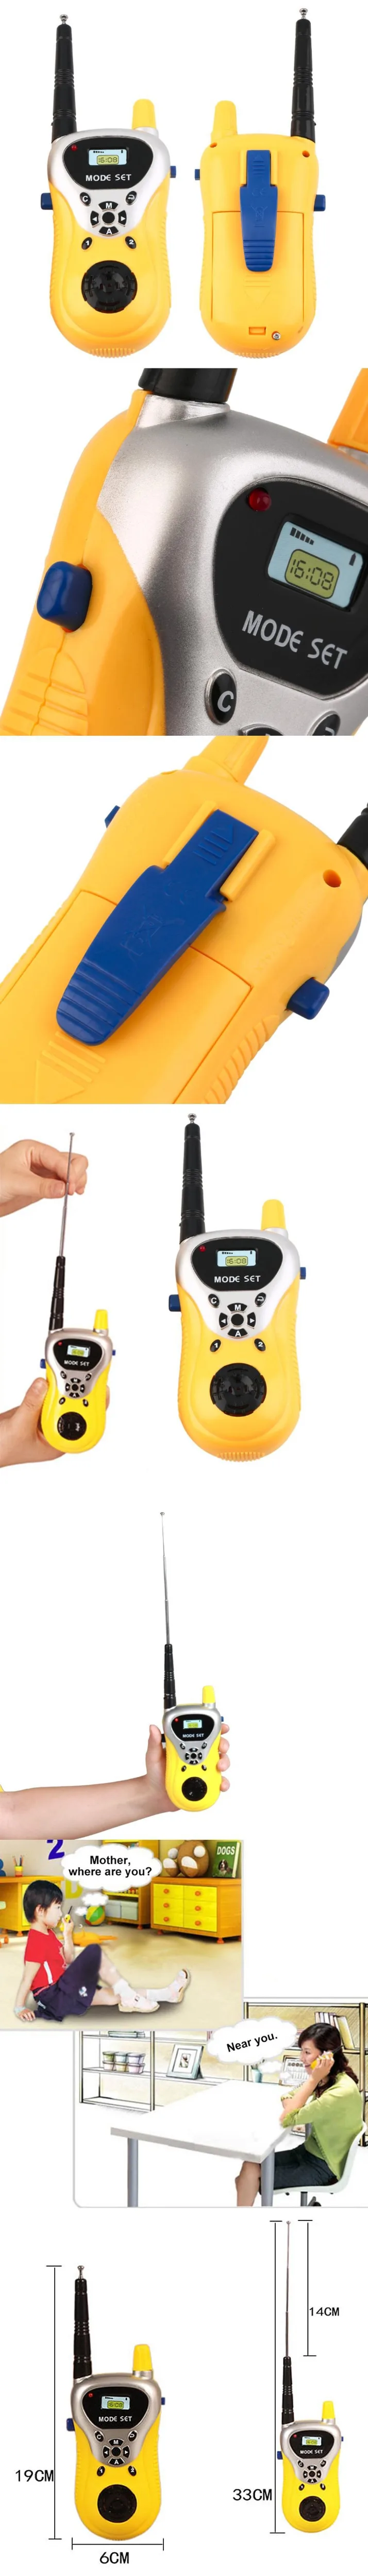 Домофон электронная игрушечная рация детский мини портативный телефон игрушки портативный двухсторонний радио домофон беспроводной Горячий